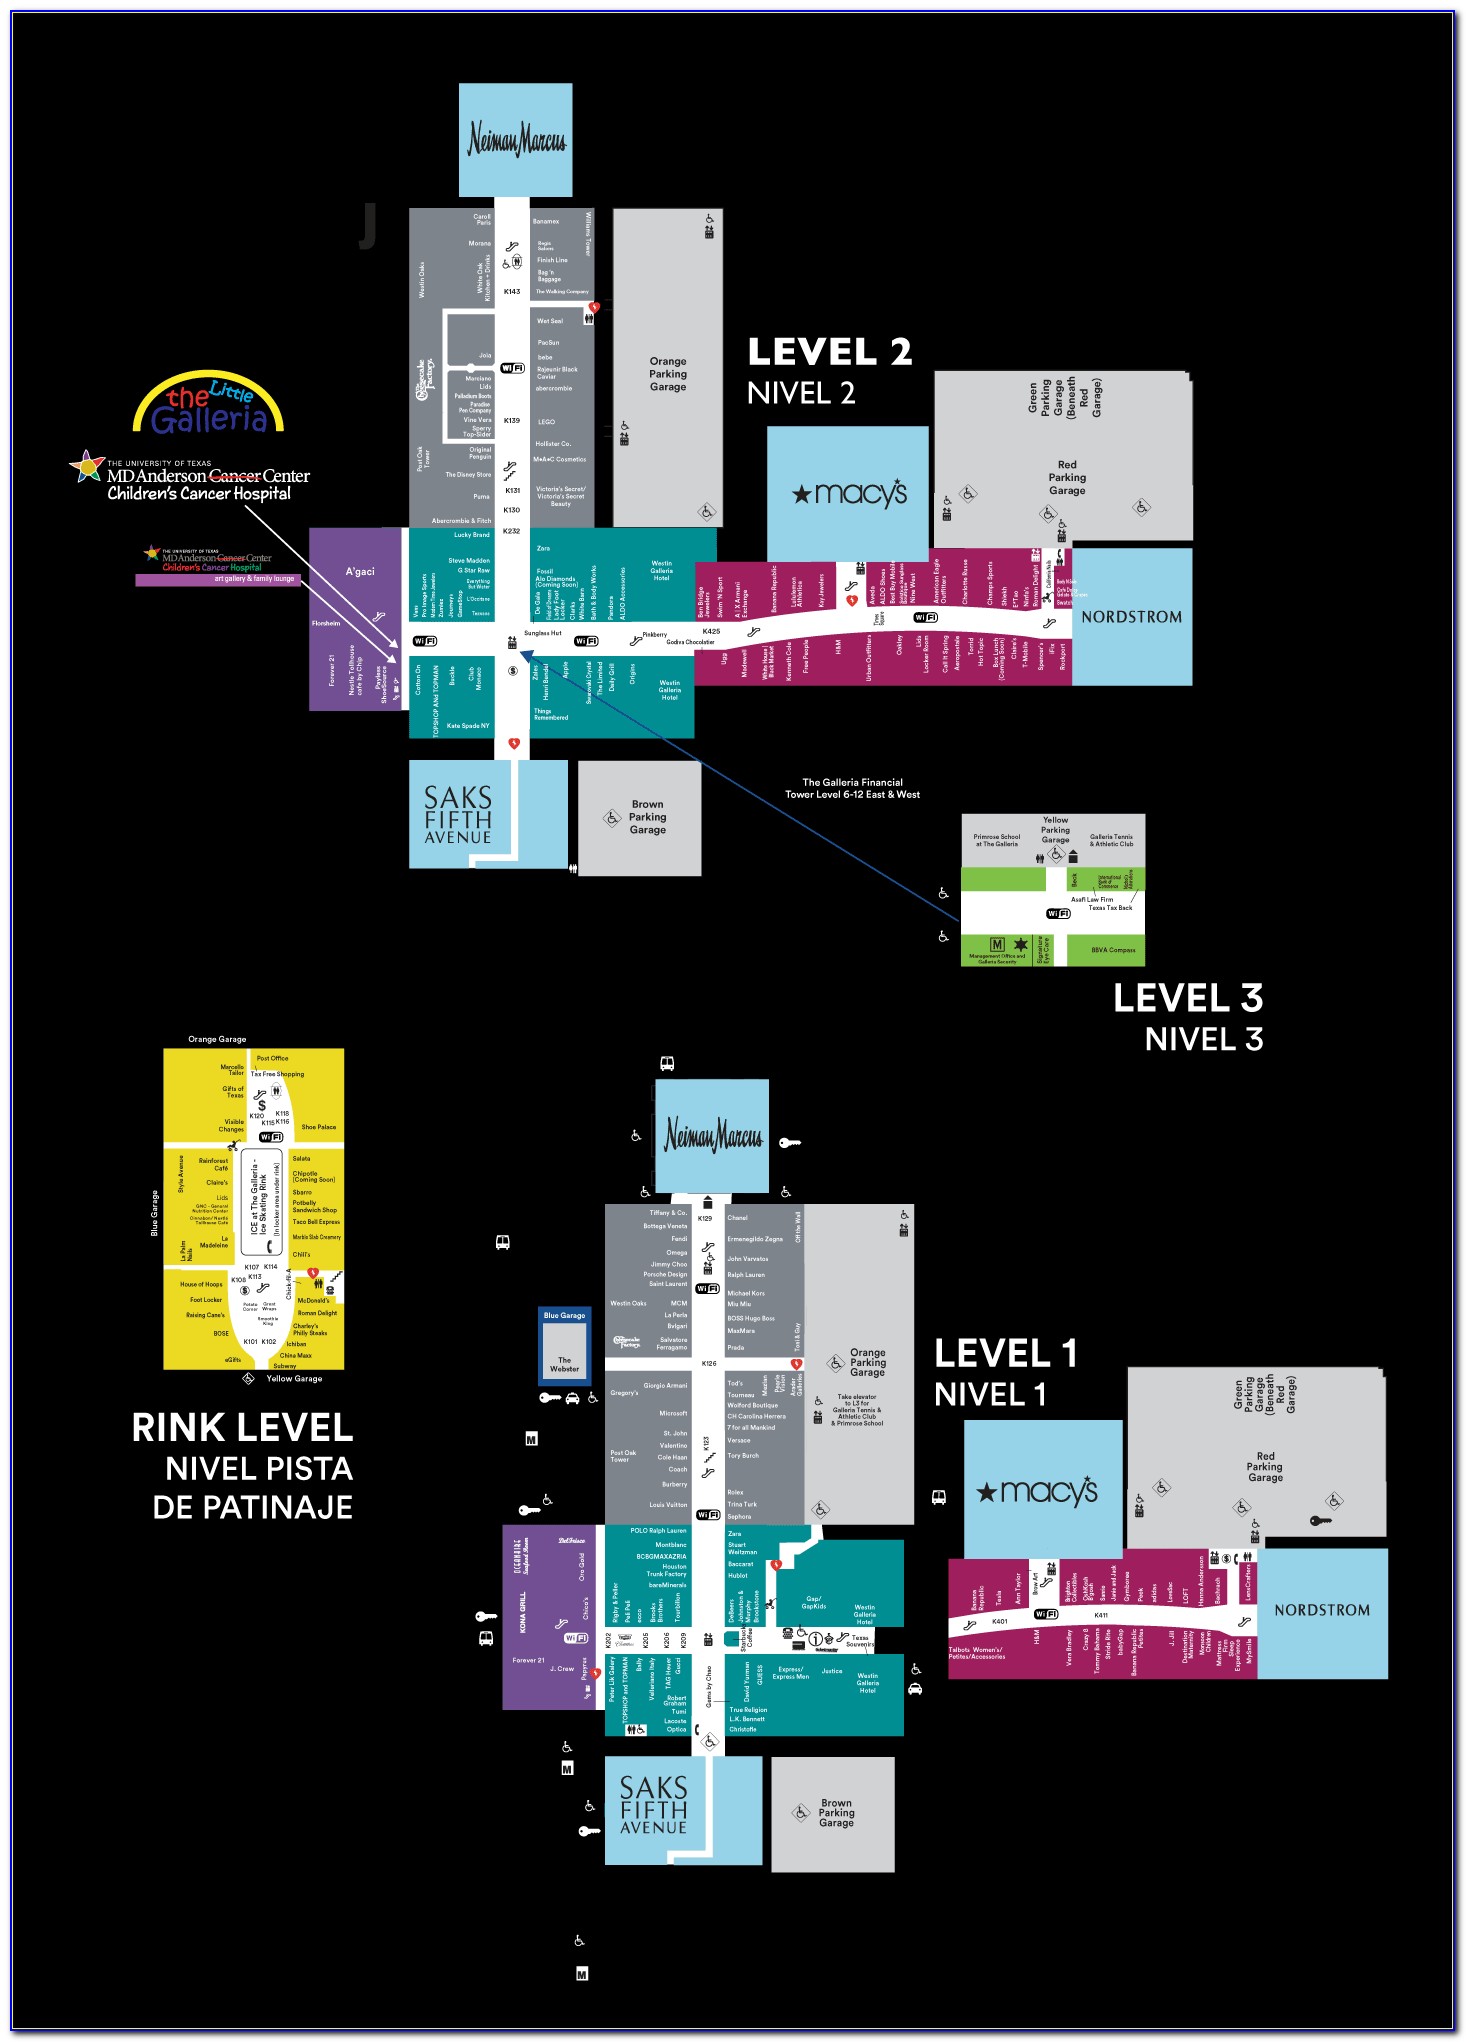 Galleria Mall Dallas Parking Map